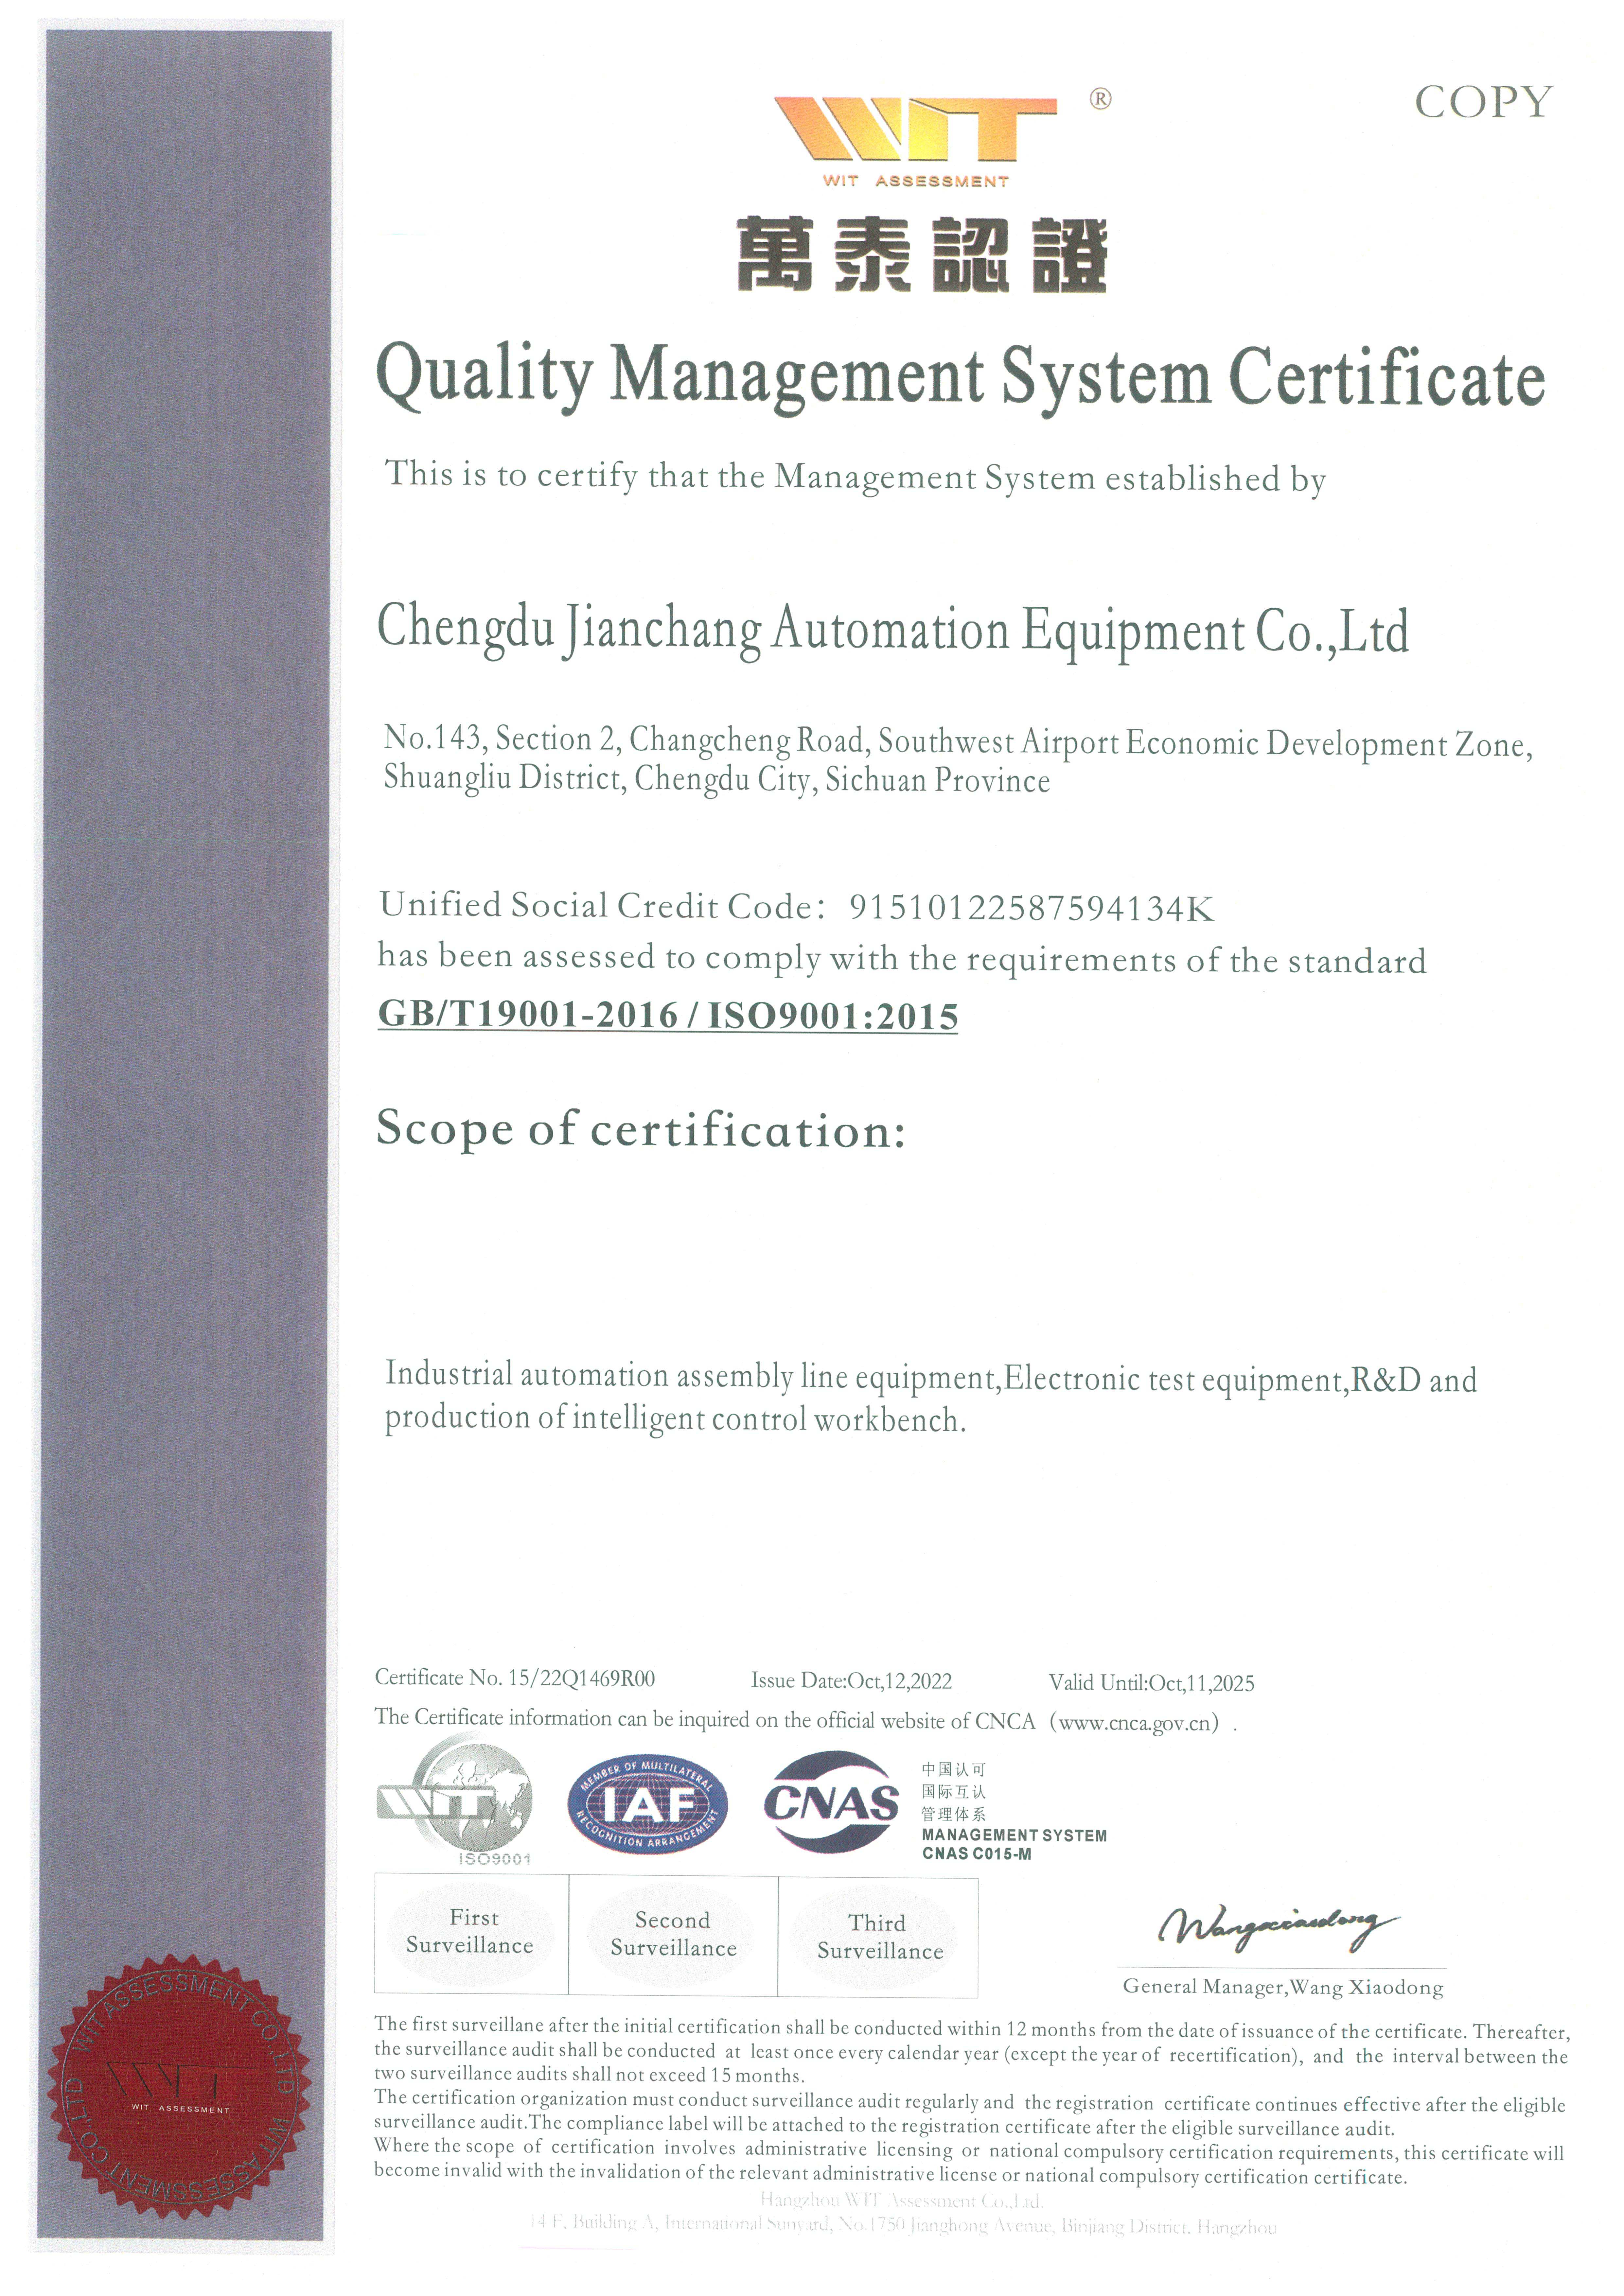 万泰认证ISO9001副本英文 拷贝.jpg